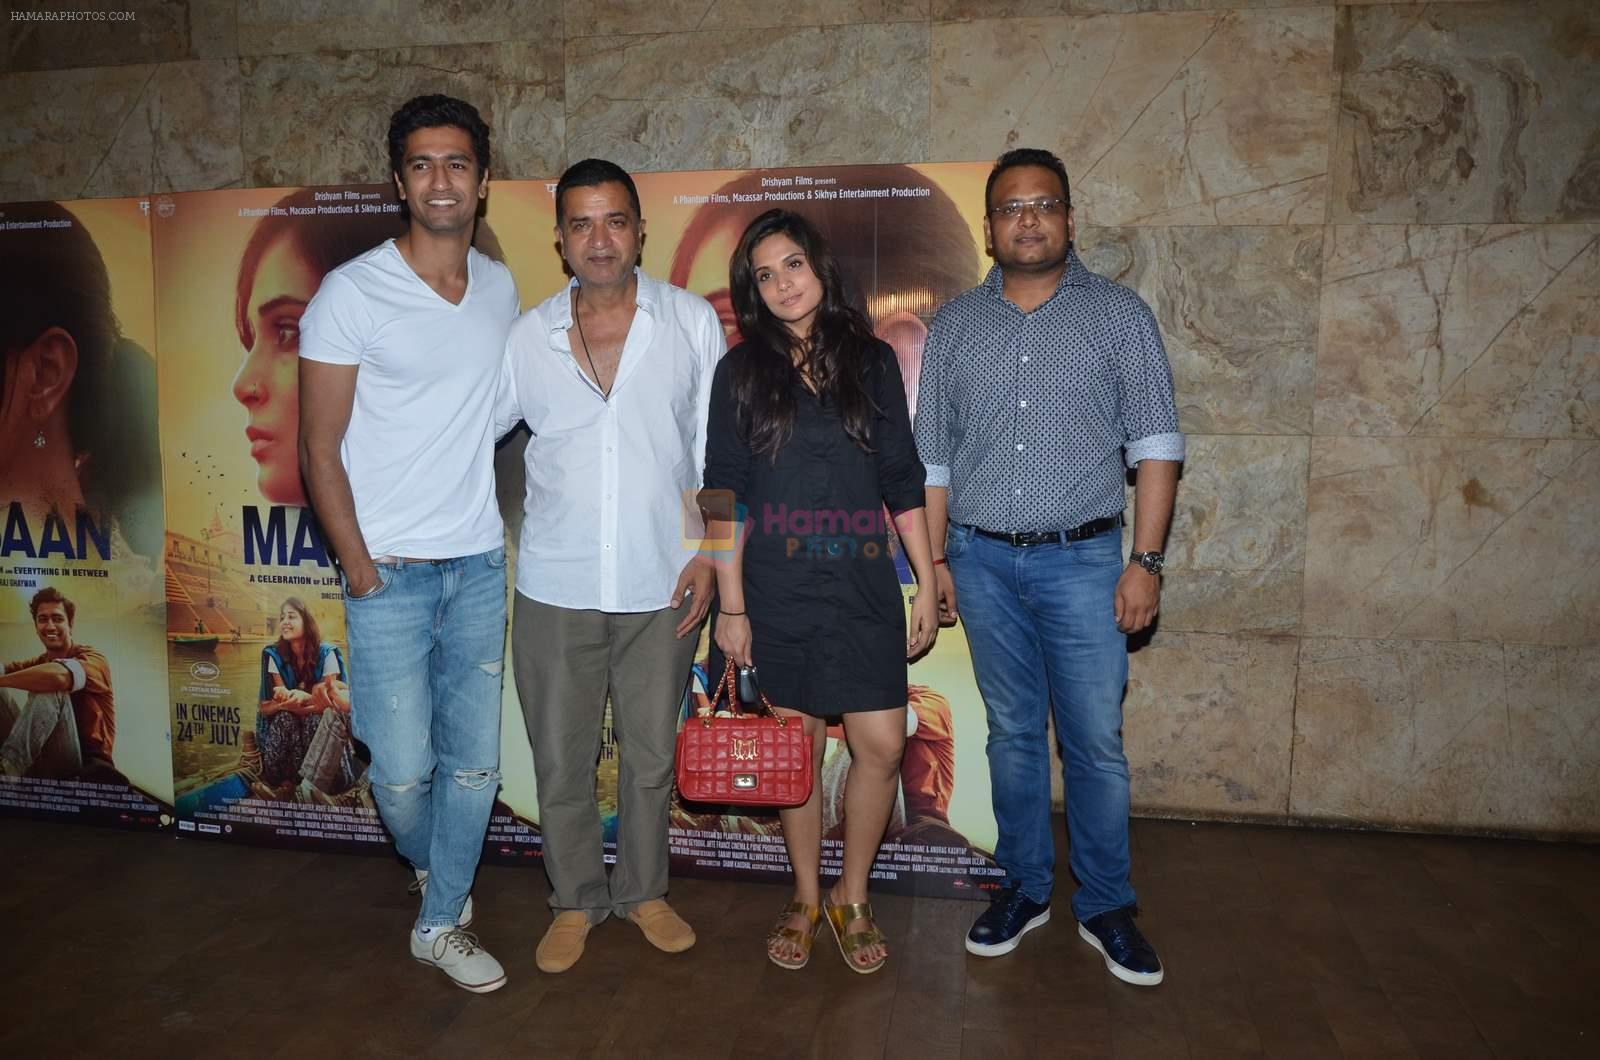 Richa Chadda, Vicky Kaushal at Masaan screening for Aamir Khan in Mumbai on 26th July 2015